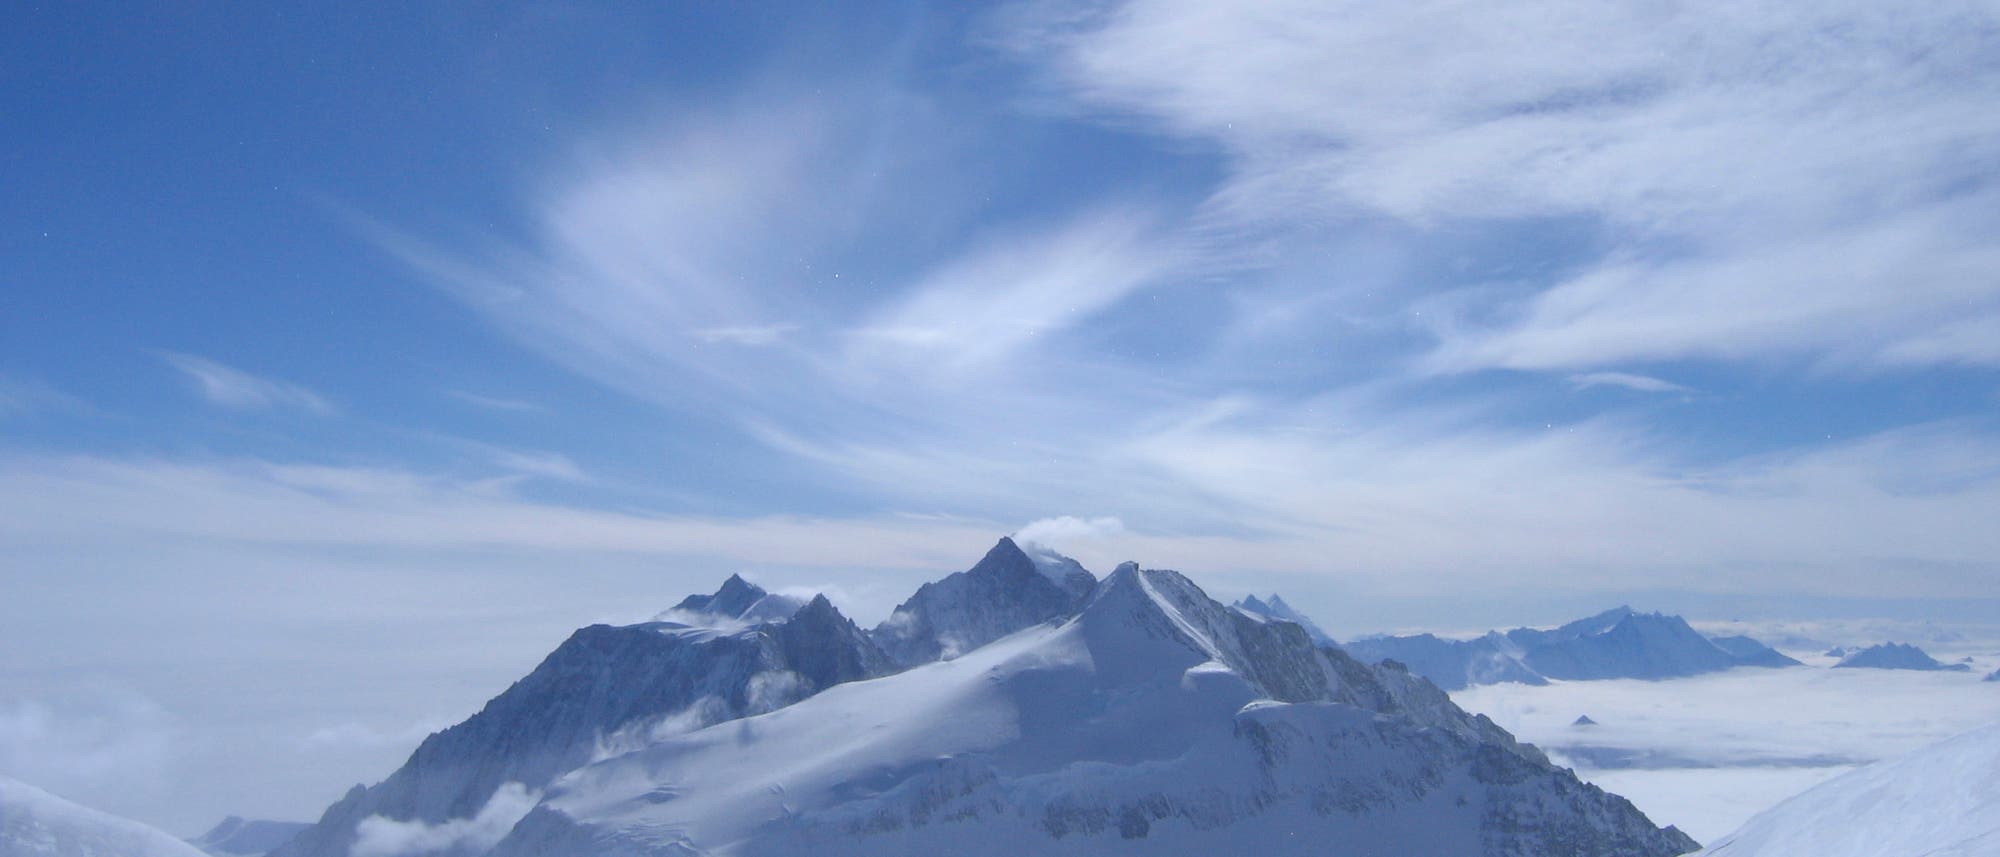 Mount Vinson - abgelegen in der Antarktis